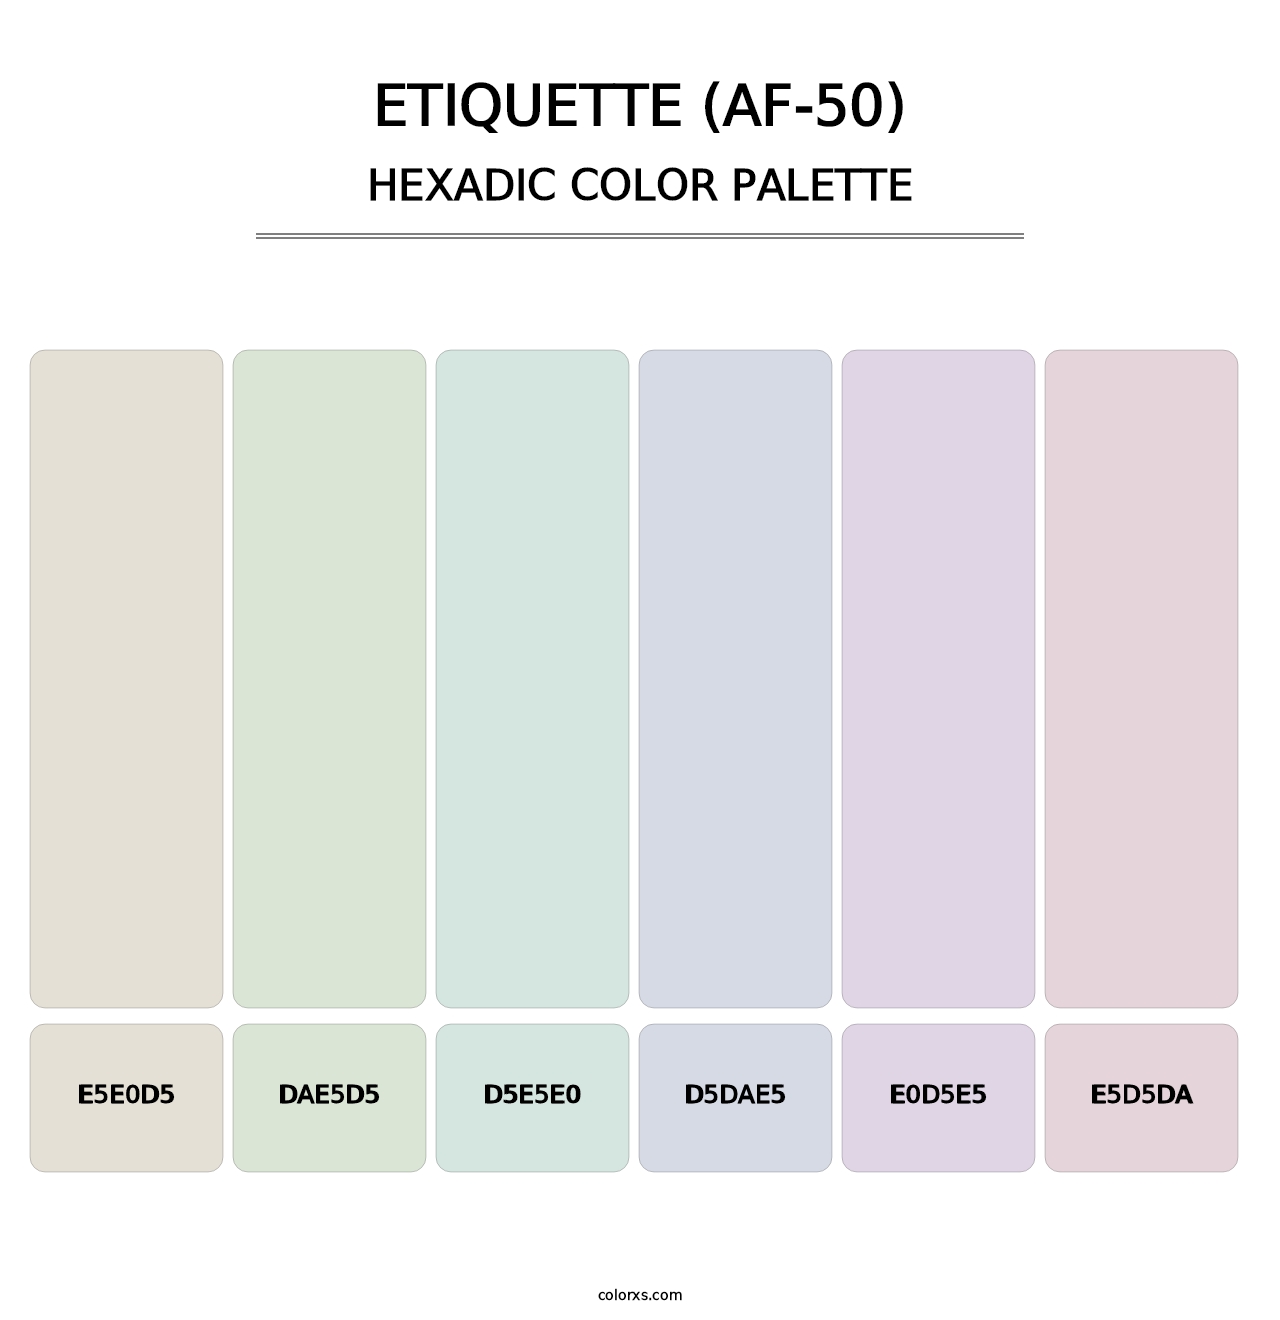 Etiquette (AF-50) - Hexadic Color Palette